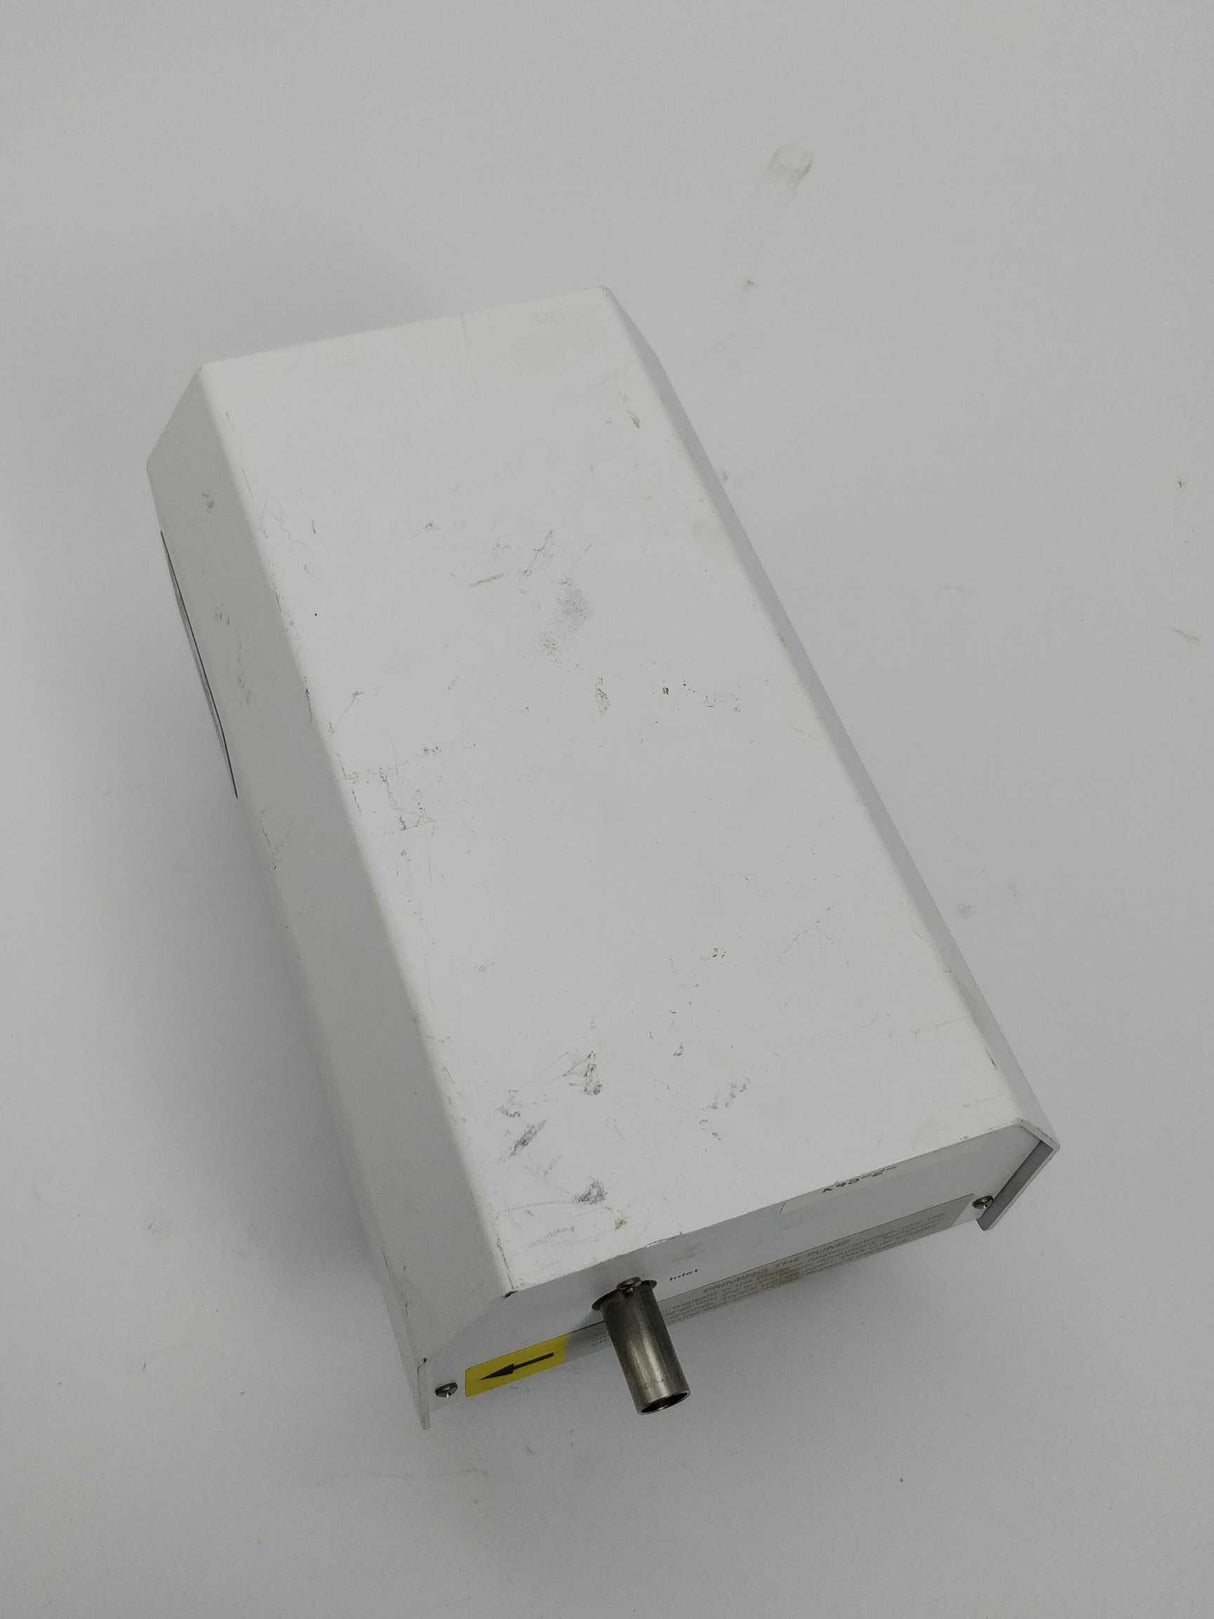 Agilent Technologies G7986A Wide input range heater